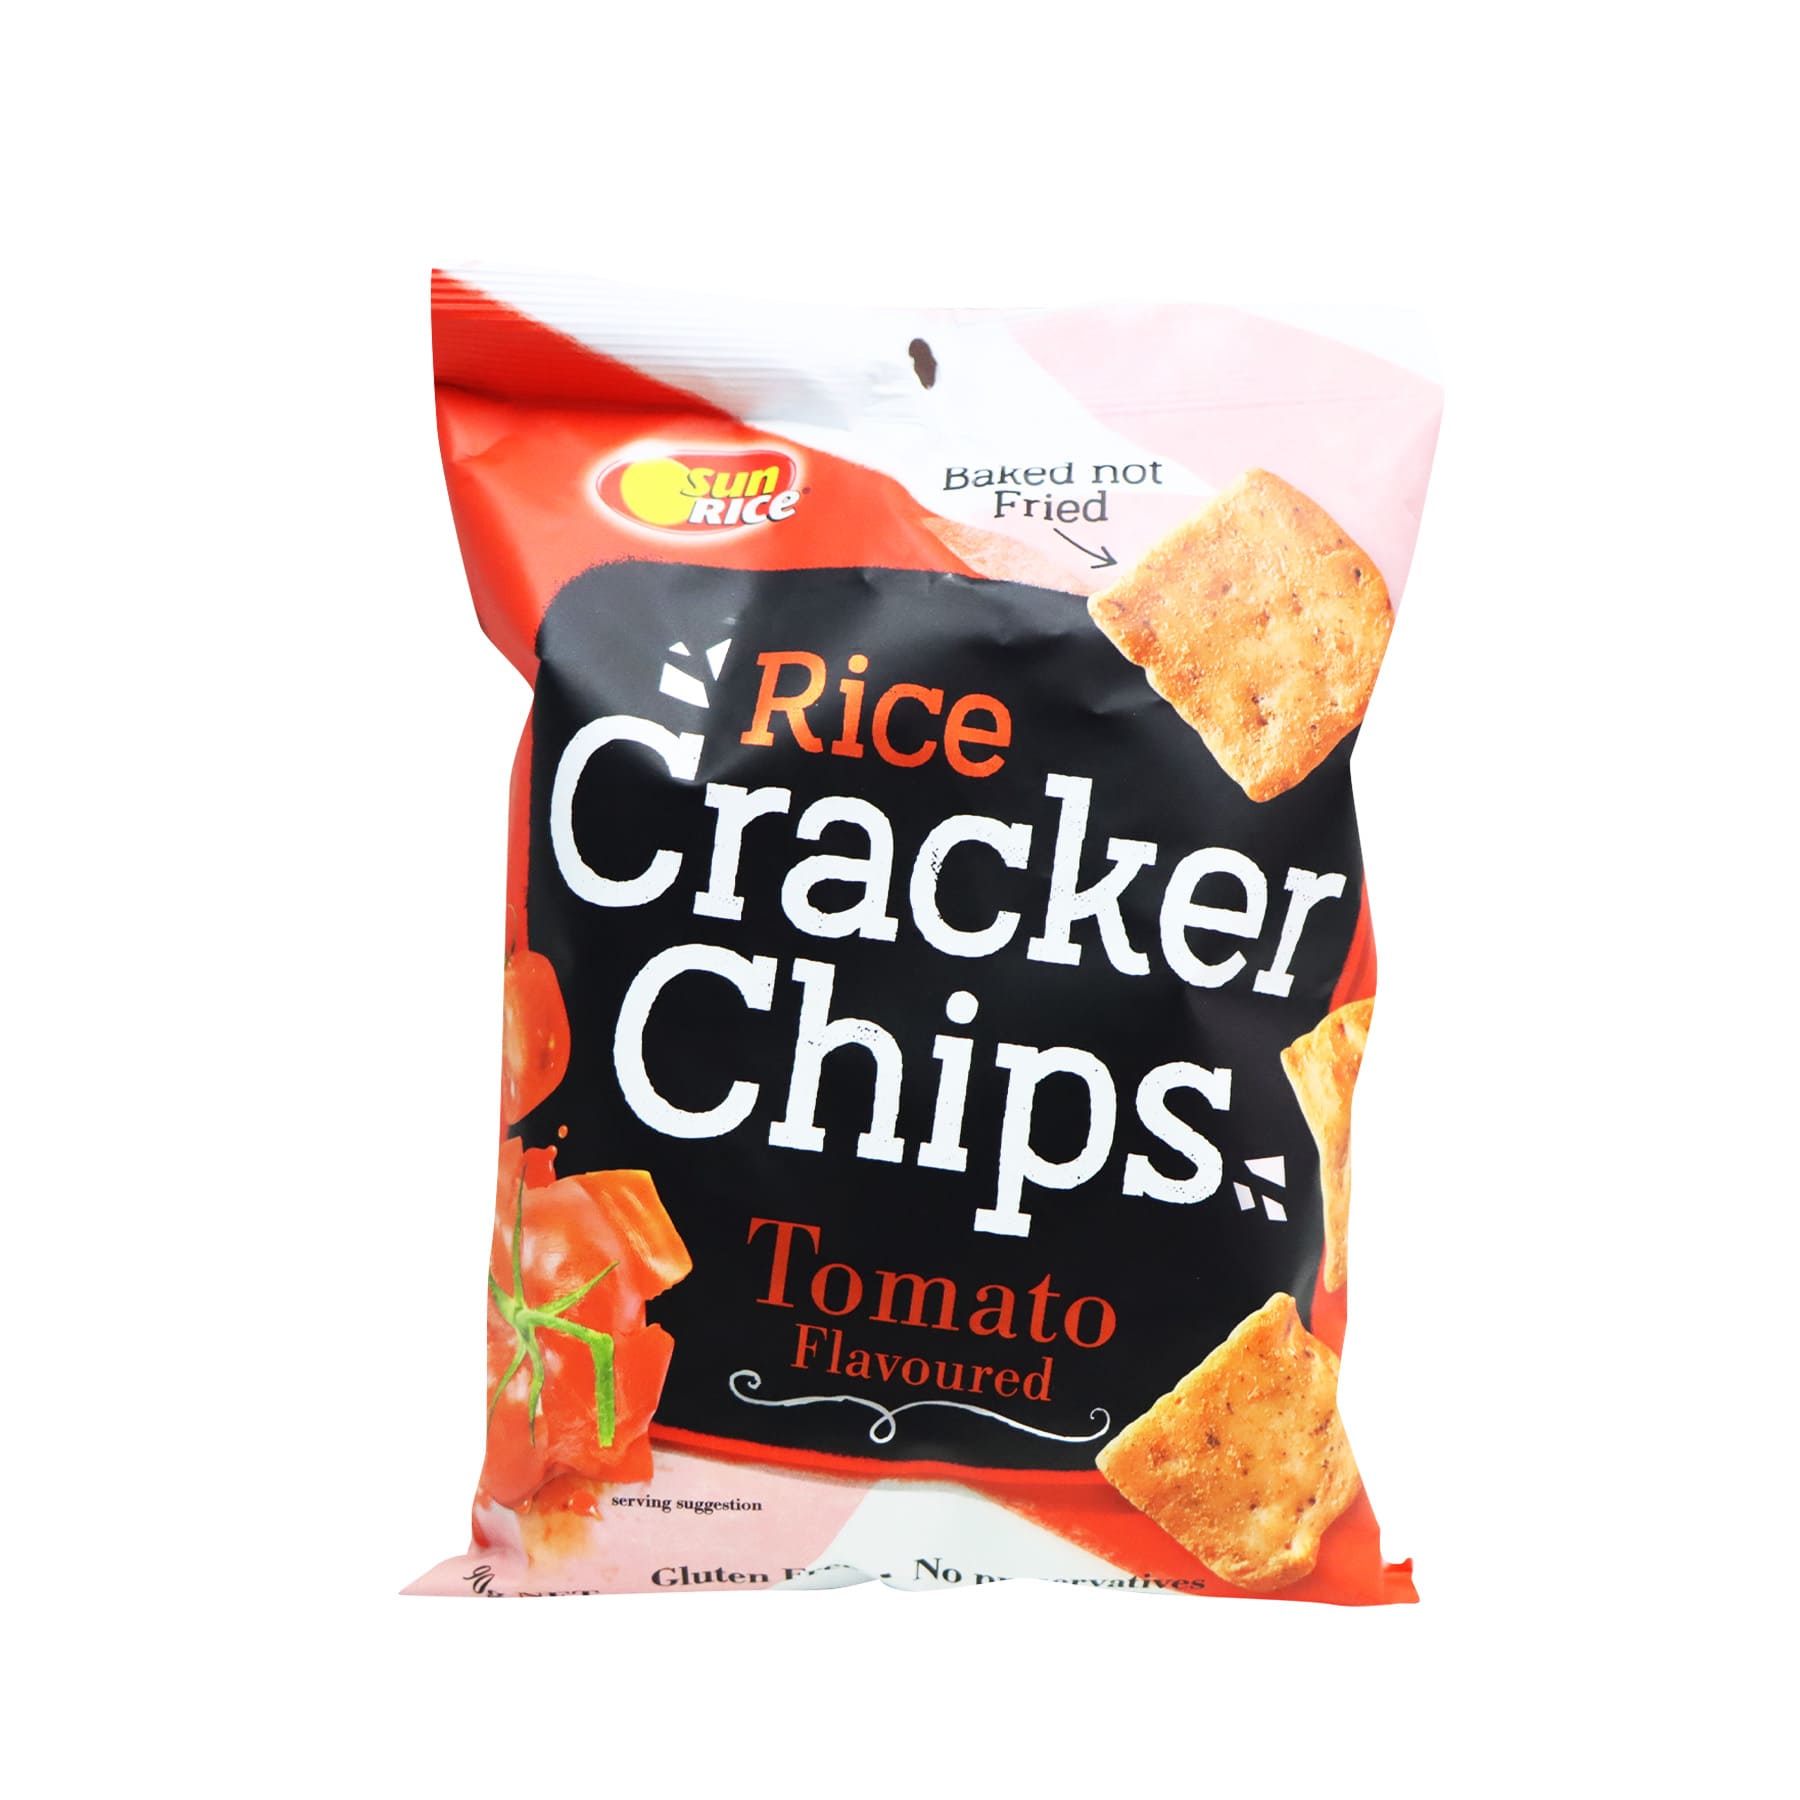 Sunrice Tomato Rice Cracker Chips 90g